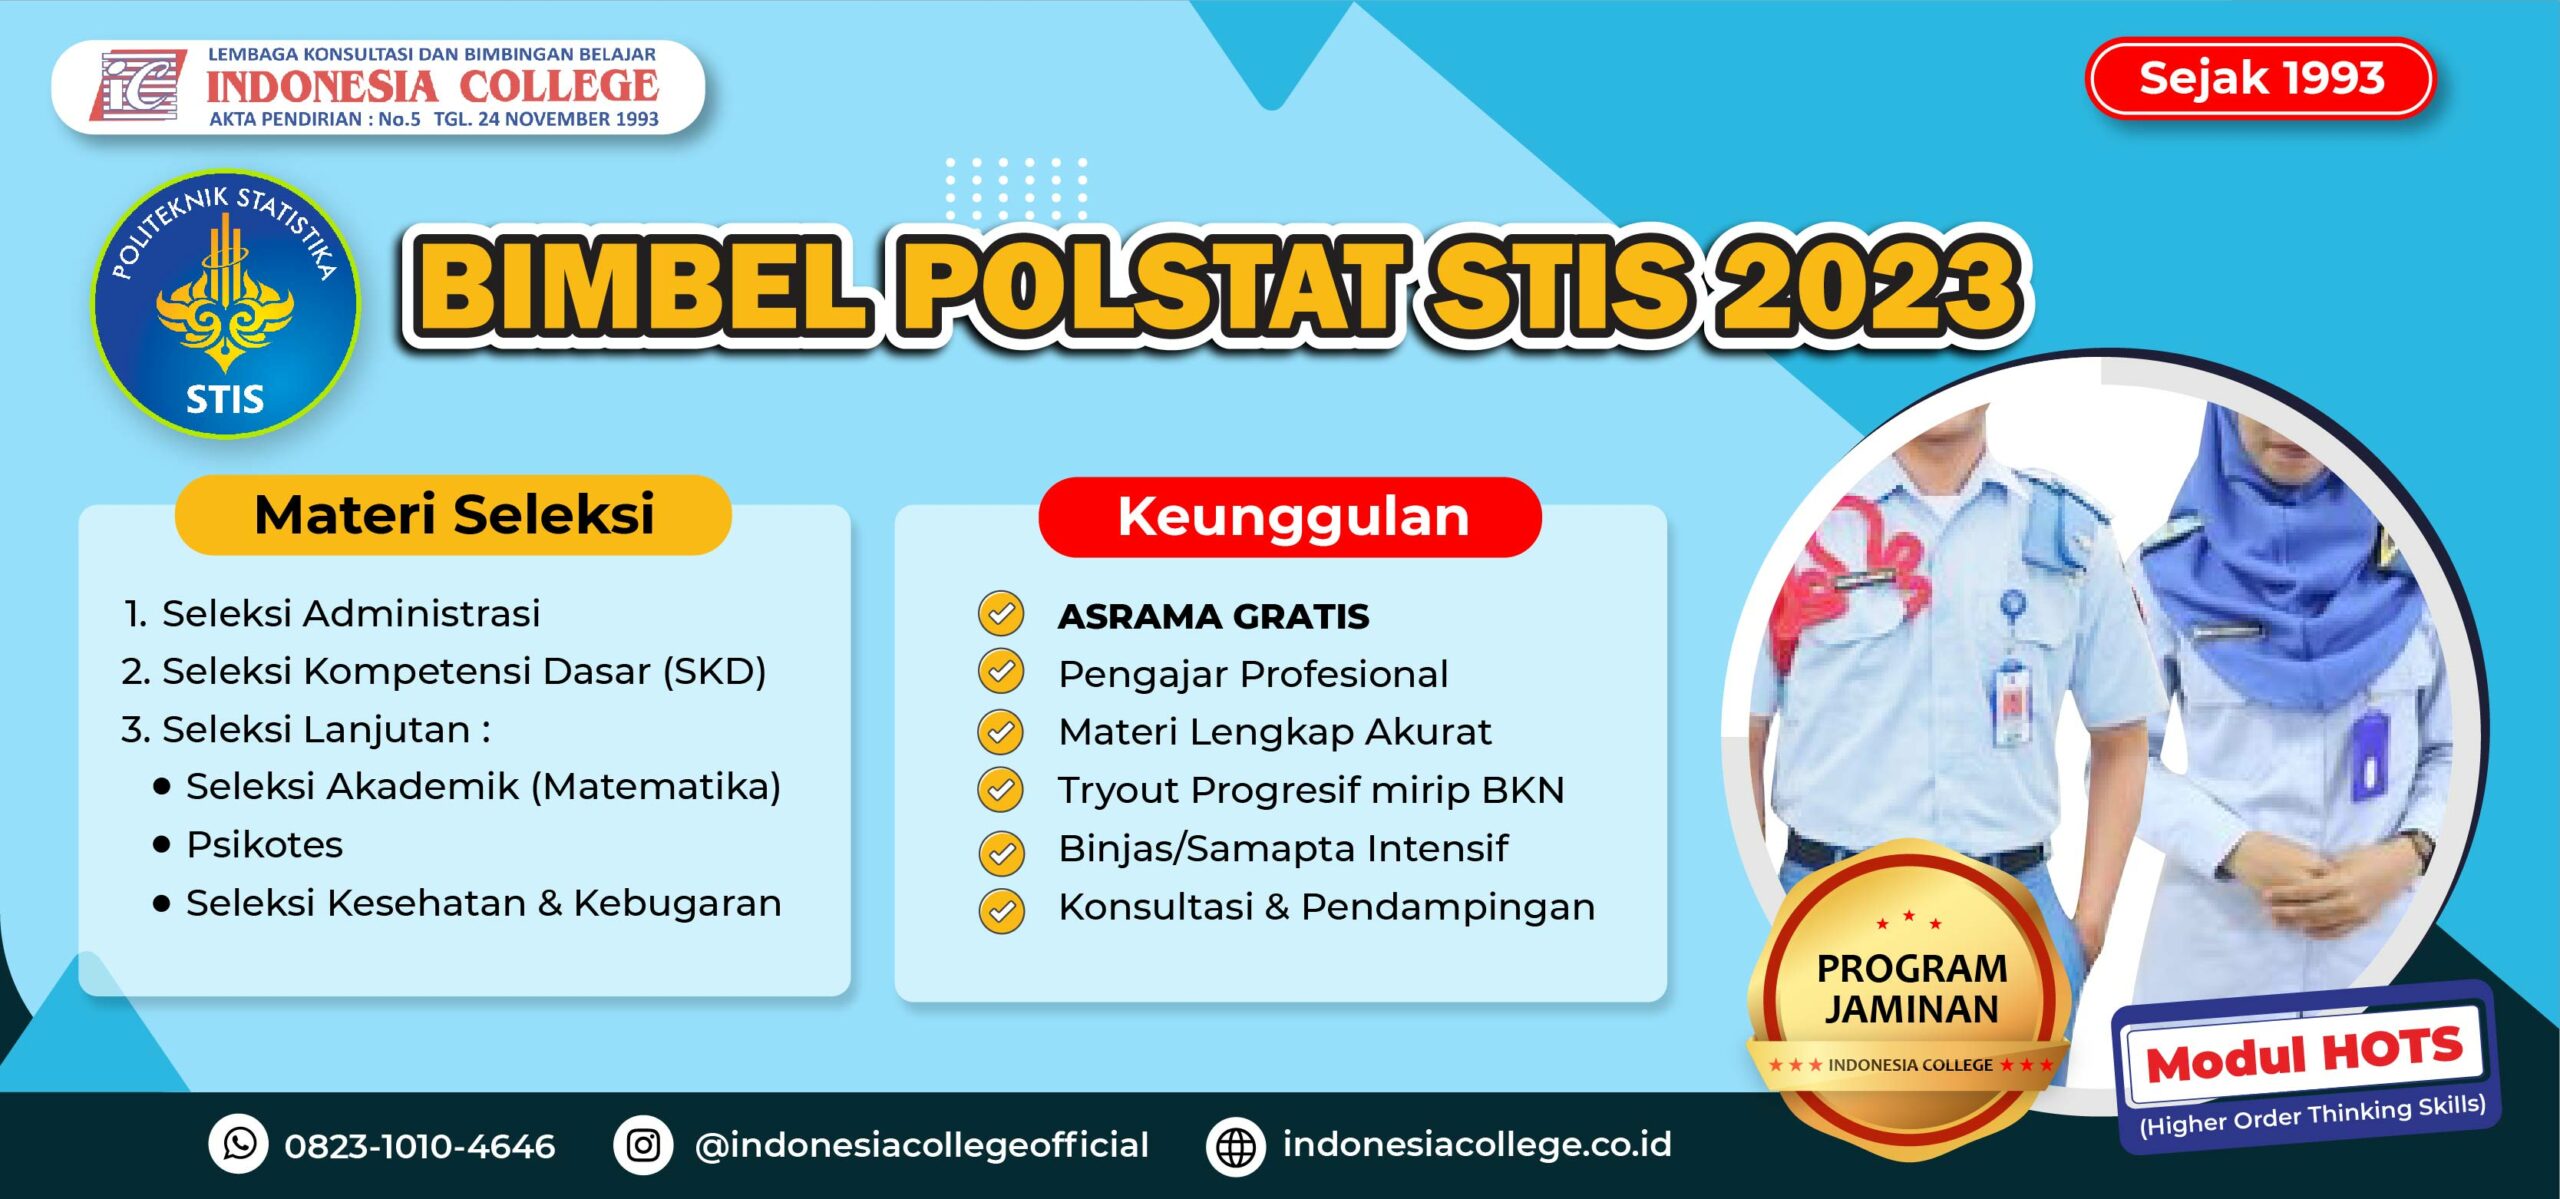 Bimbel Polstat STIS 2023 - Indonesia College